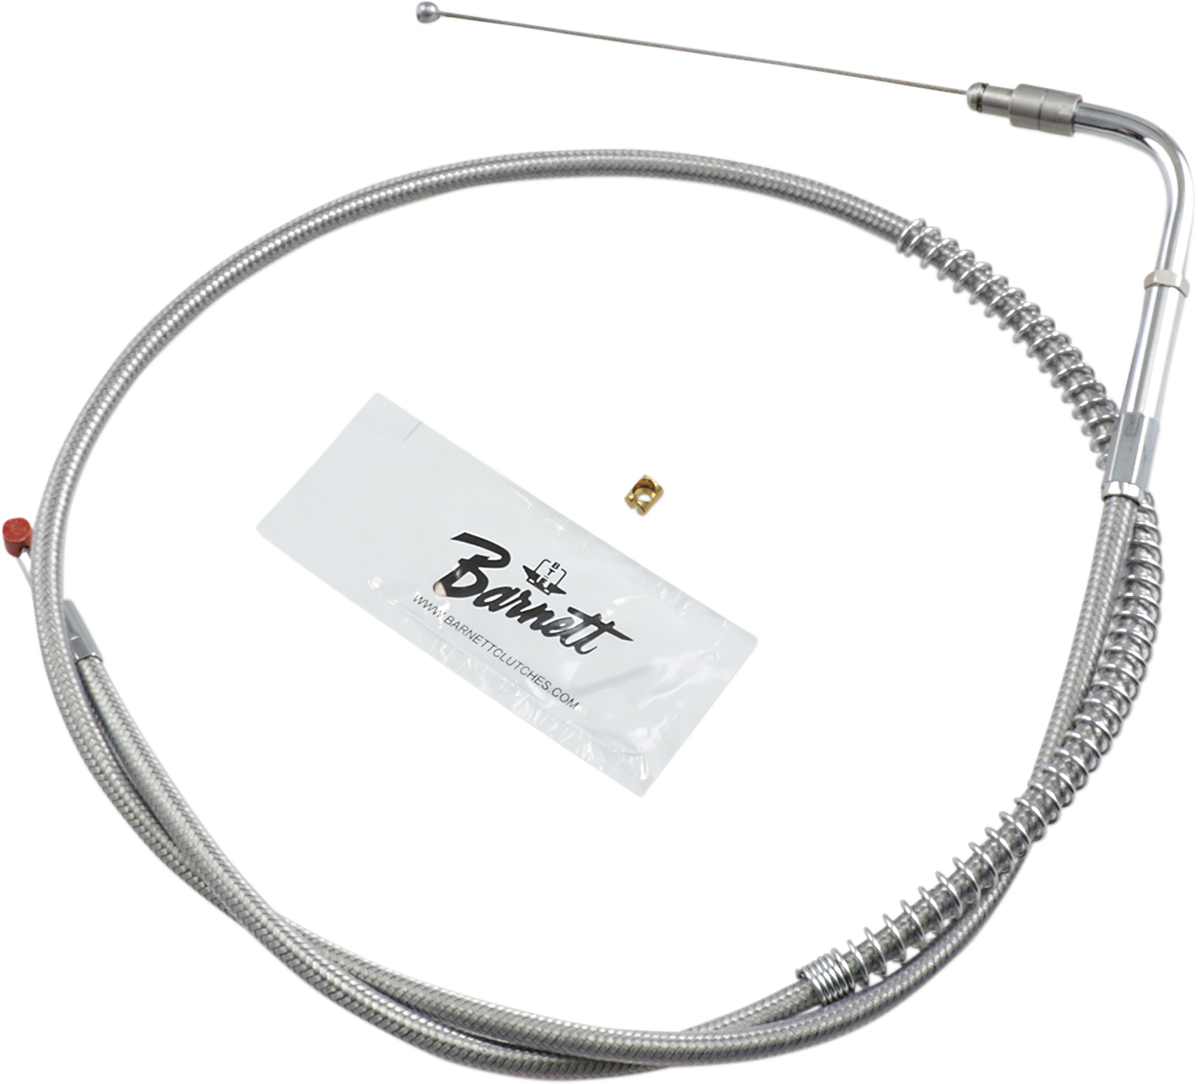 BARNETT Throttle Cable - +6" - Stainless Steel 102-30-30026-06